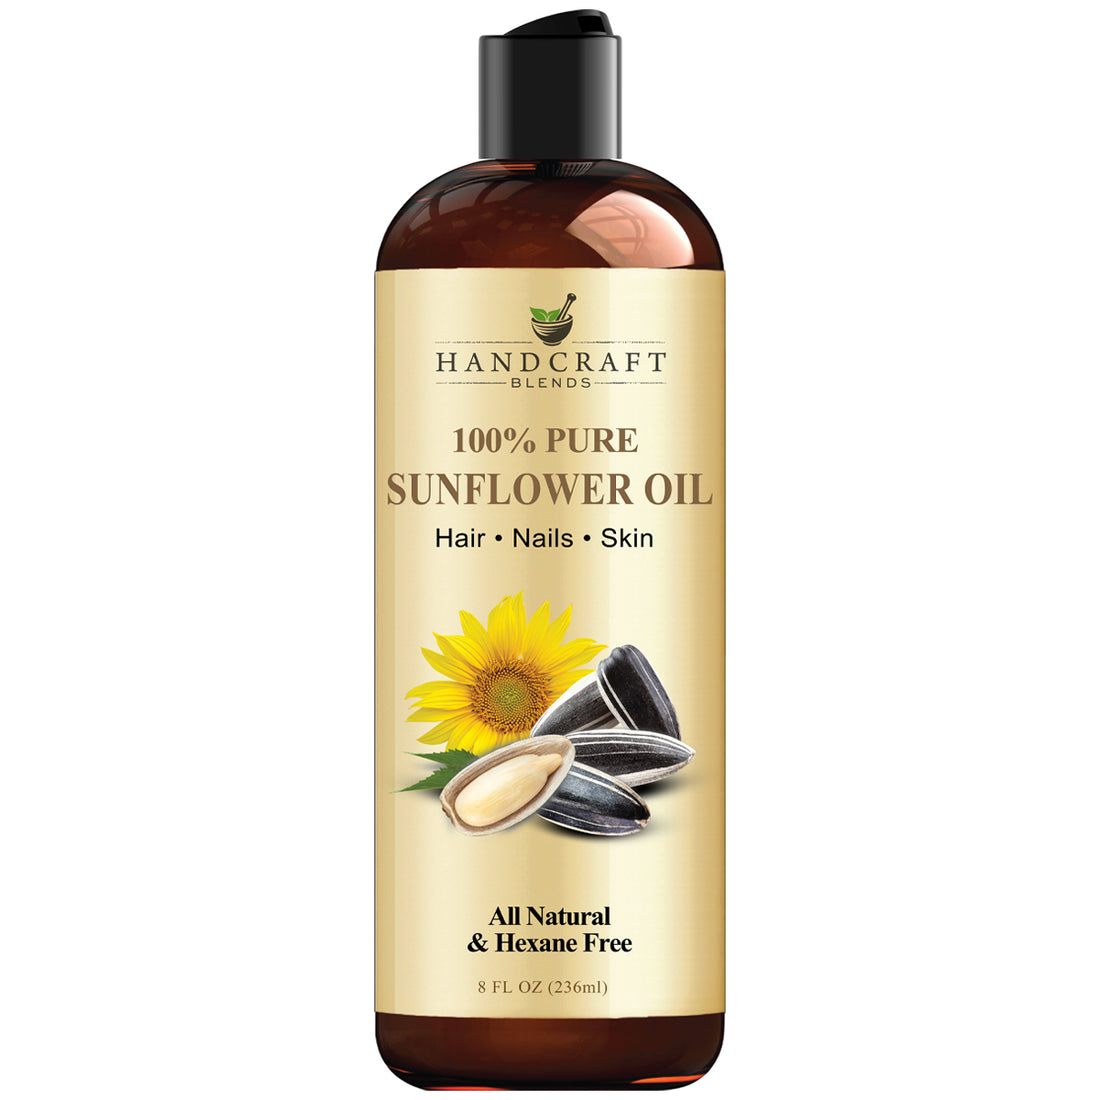  Handcraft Blends 100% Pure Sunflower Oil